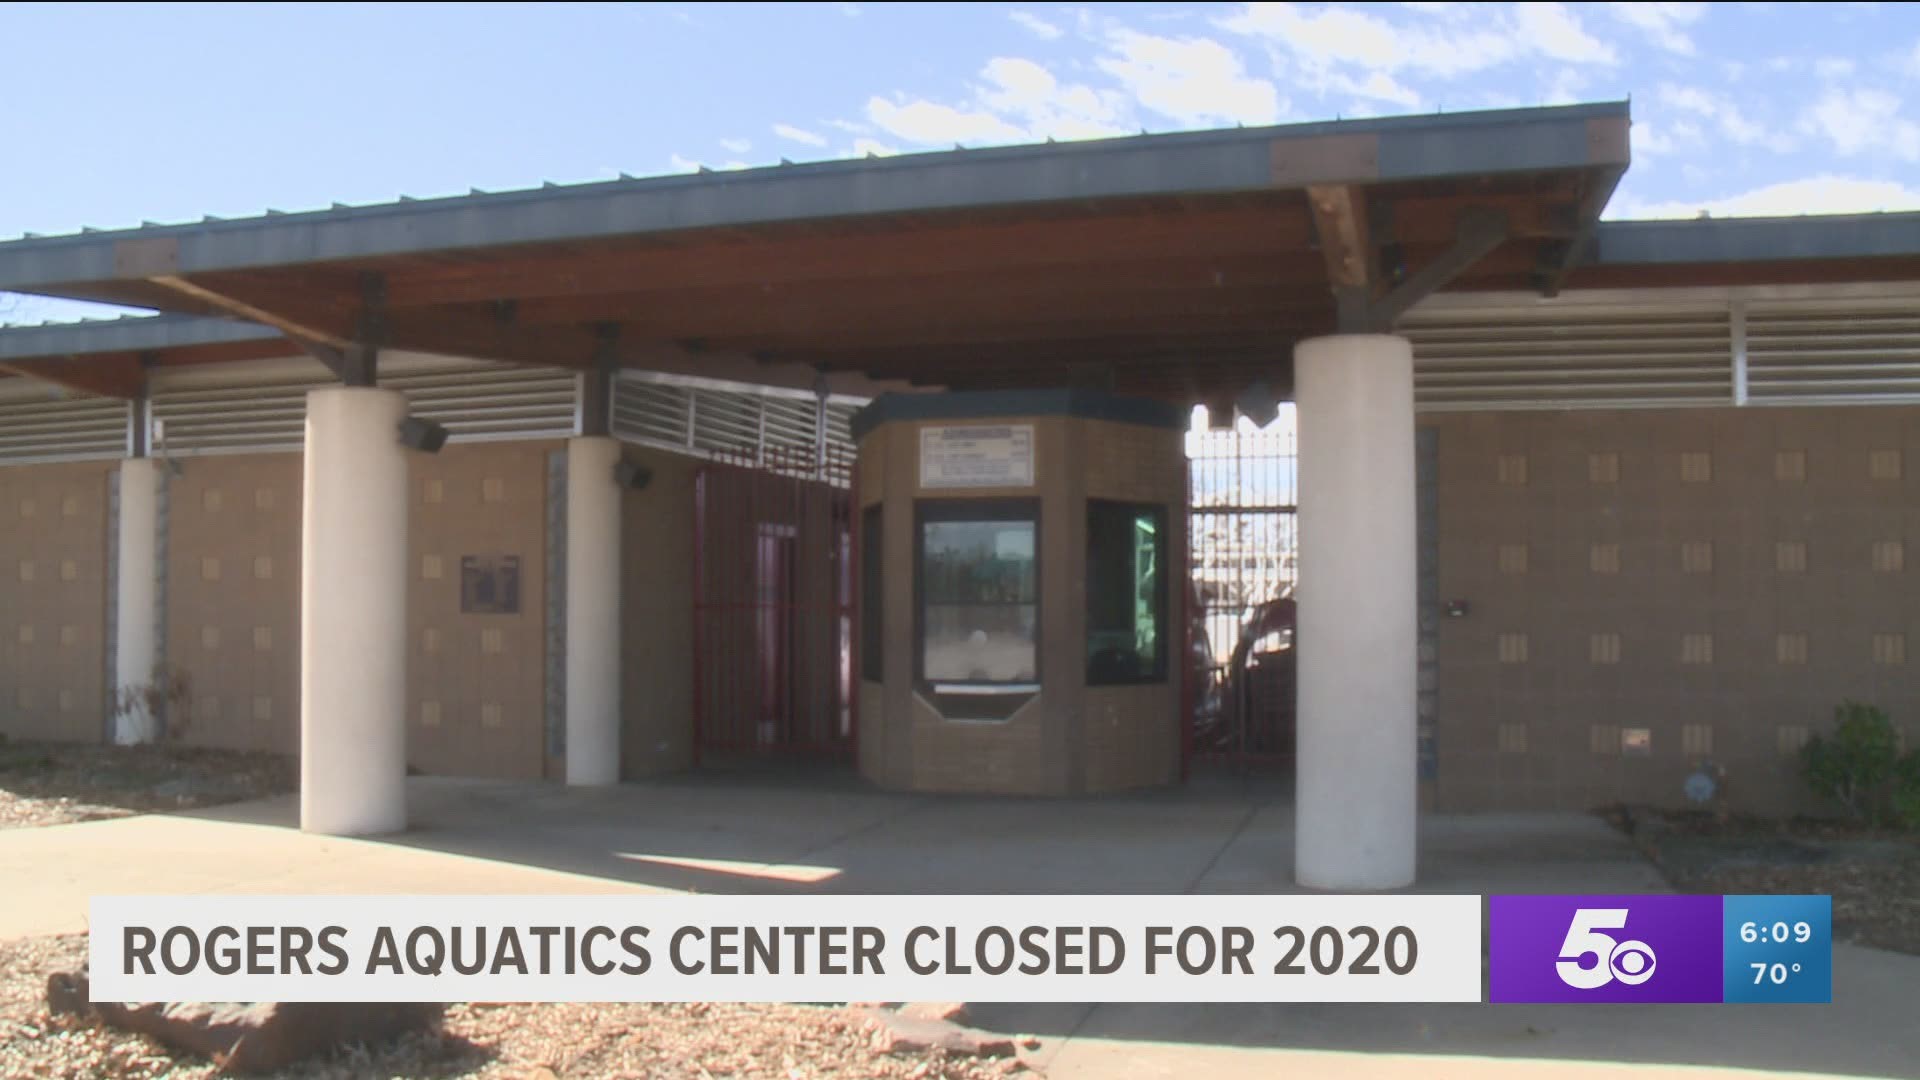 Rogers Aquatics Center closed for 2020 due to coronavirus